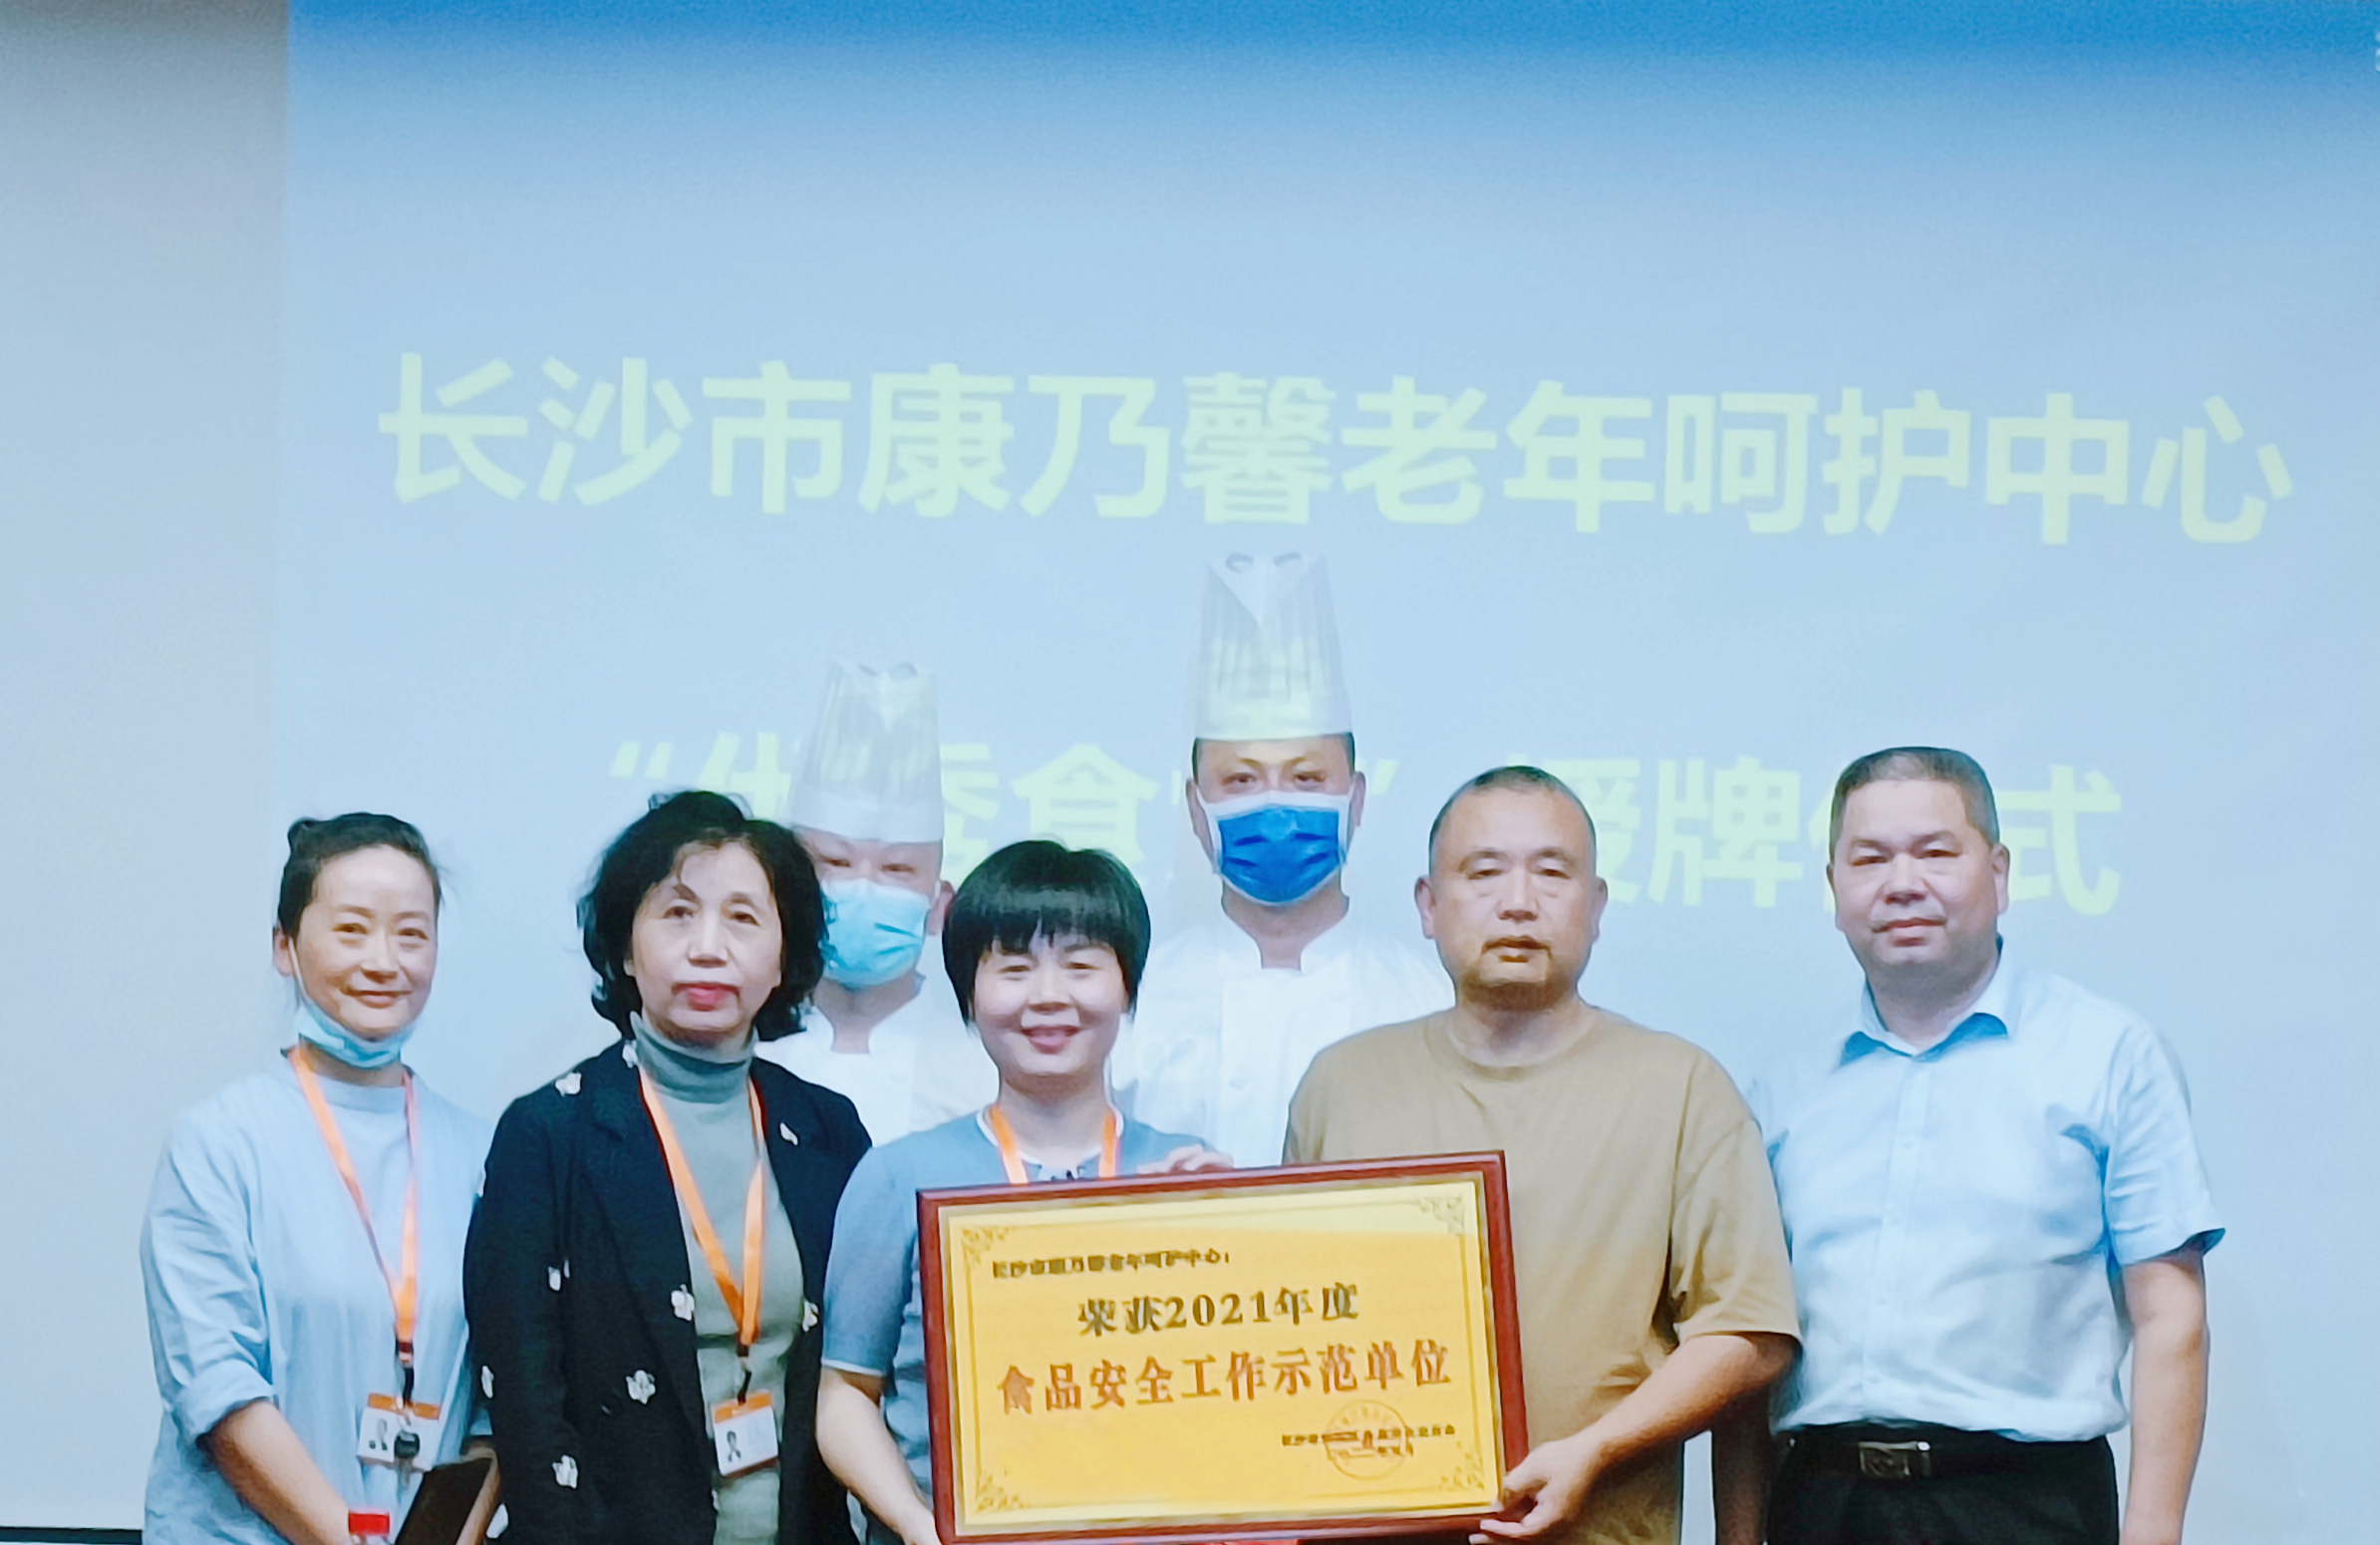 长沙市康乃馨老年呵护中心荣获“2021食品安全工作示范单位”称号